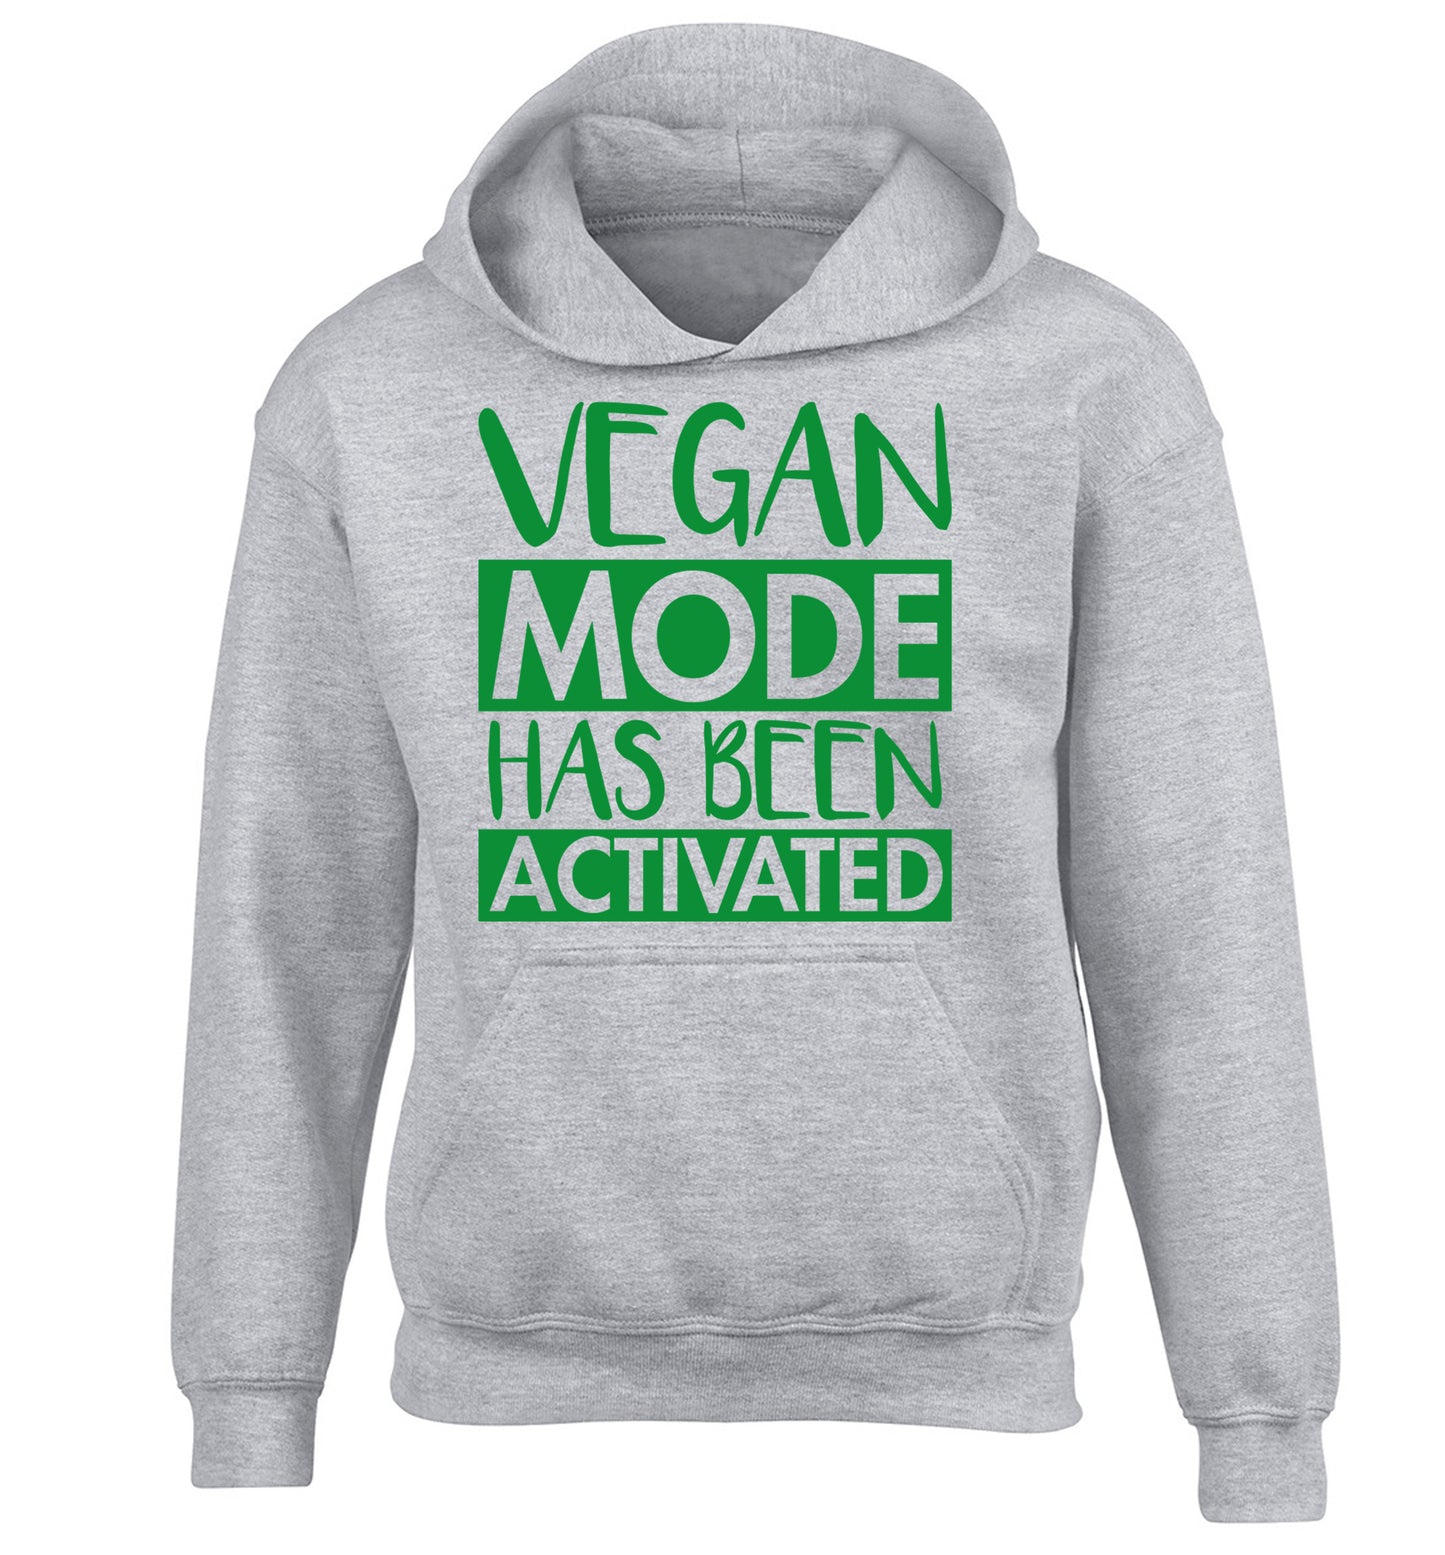 Vegan mode activated children's grey hoodie 12-14 Years